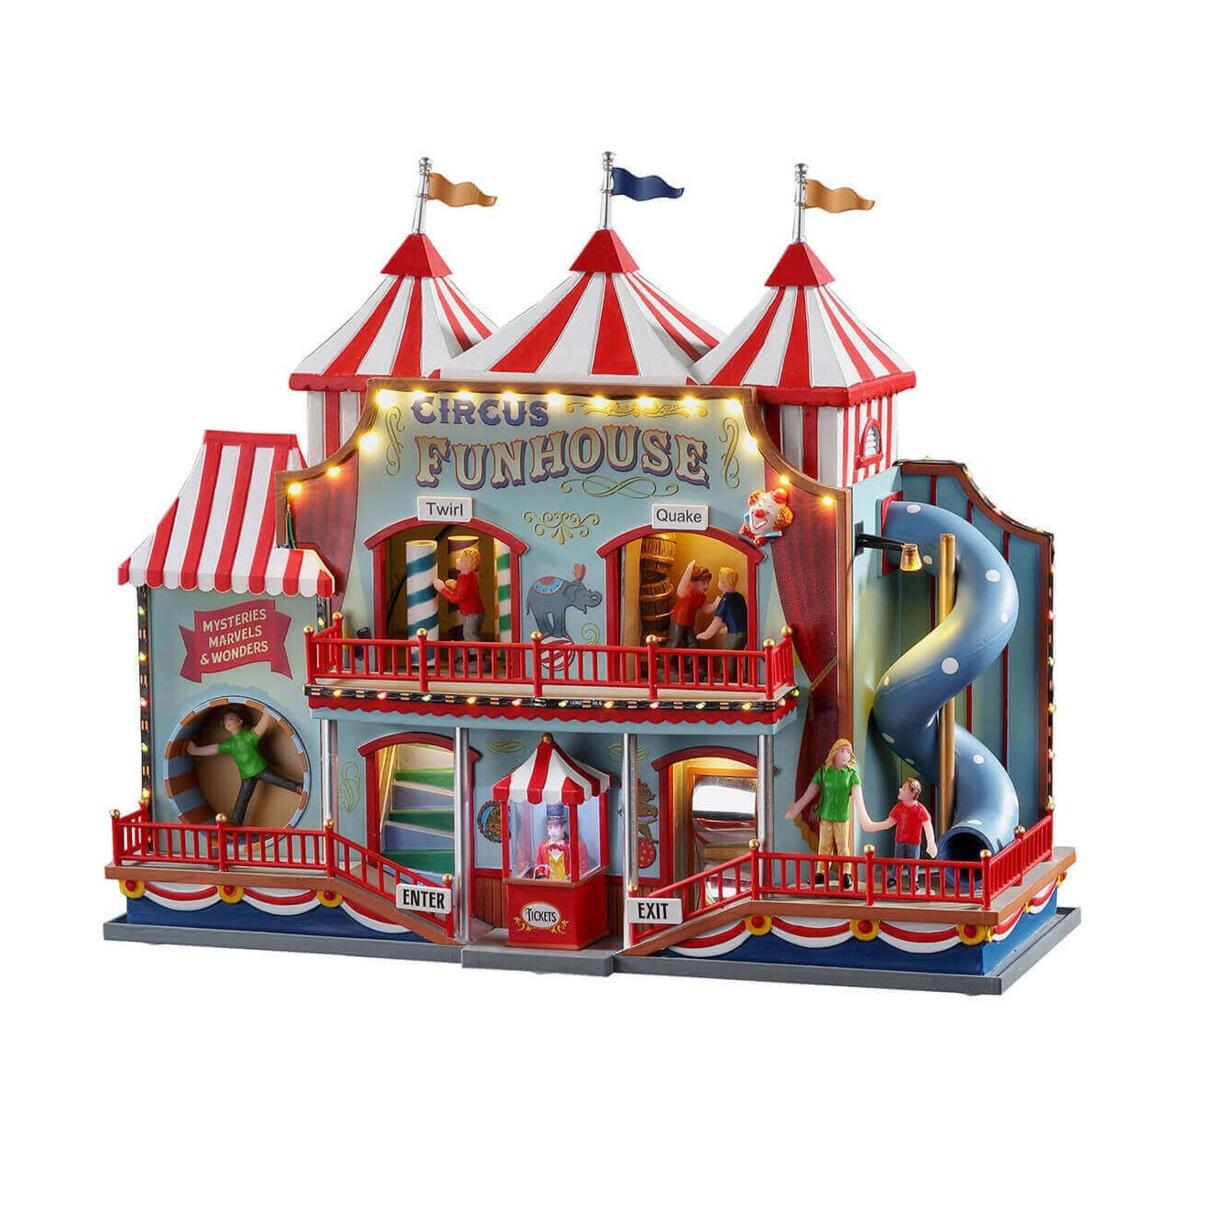 Beleuchtetes Weihnachtsdorf Lemax mit Musik und Animation Circus Funhouse 1